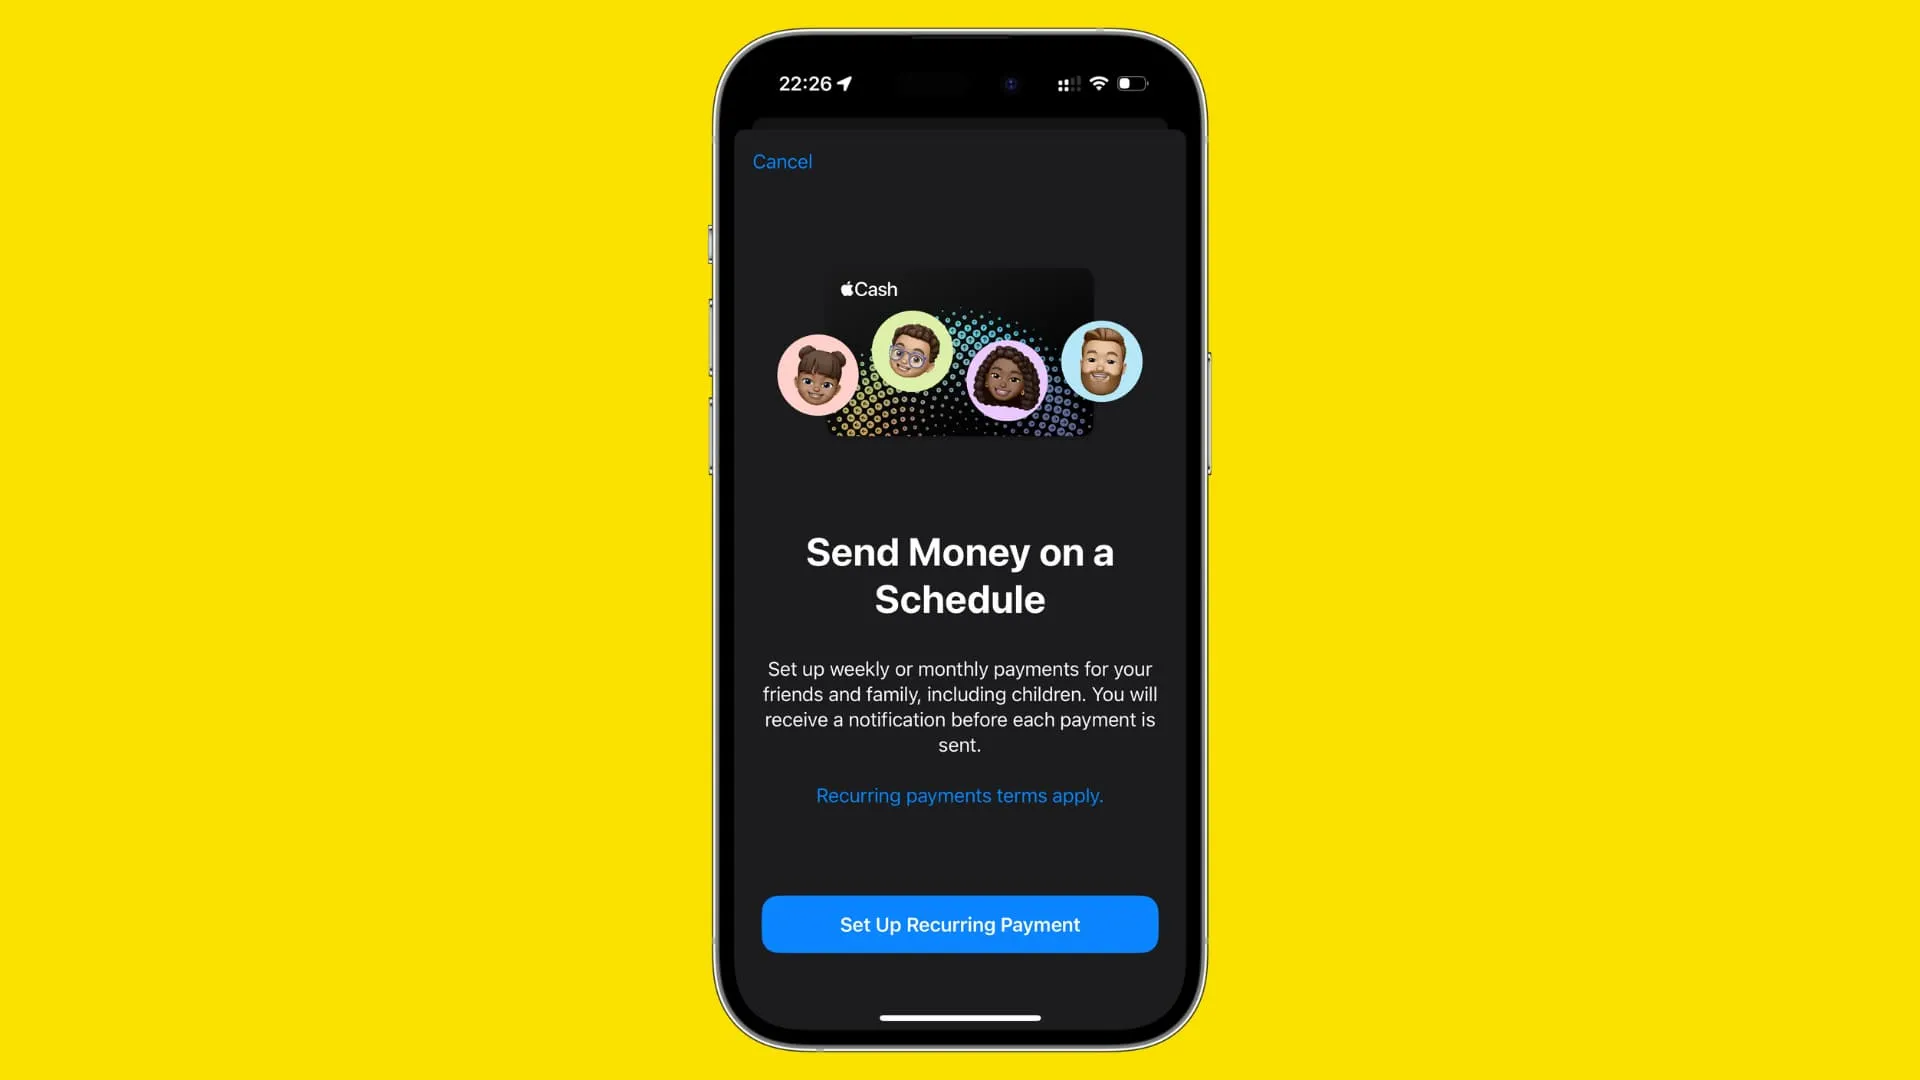 Senden Sie Geld nach einem Zeitplan-Banner auf dem iPhone